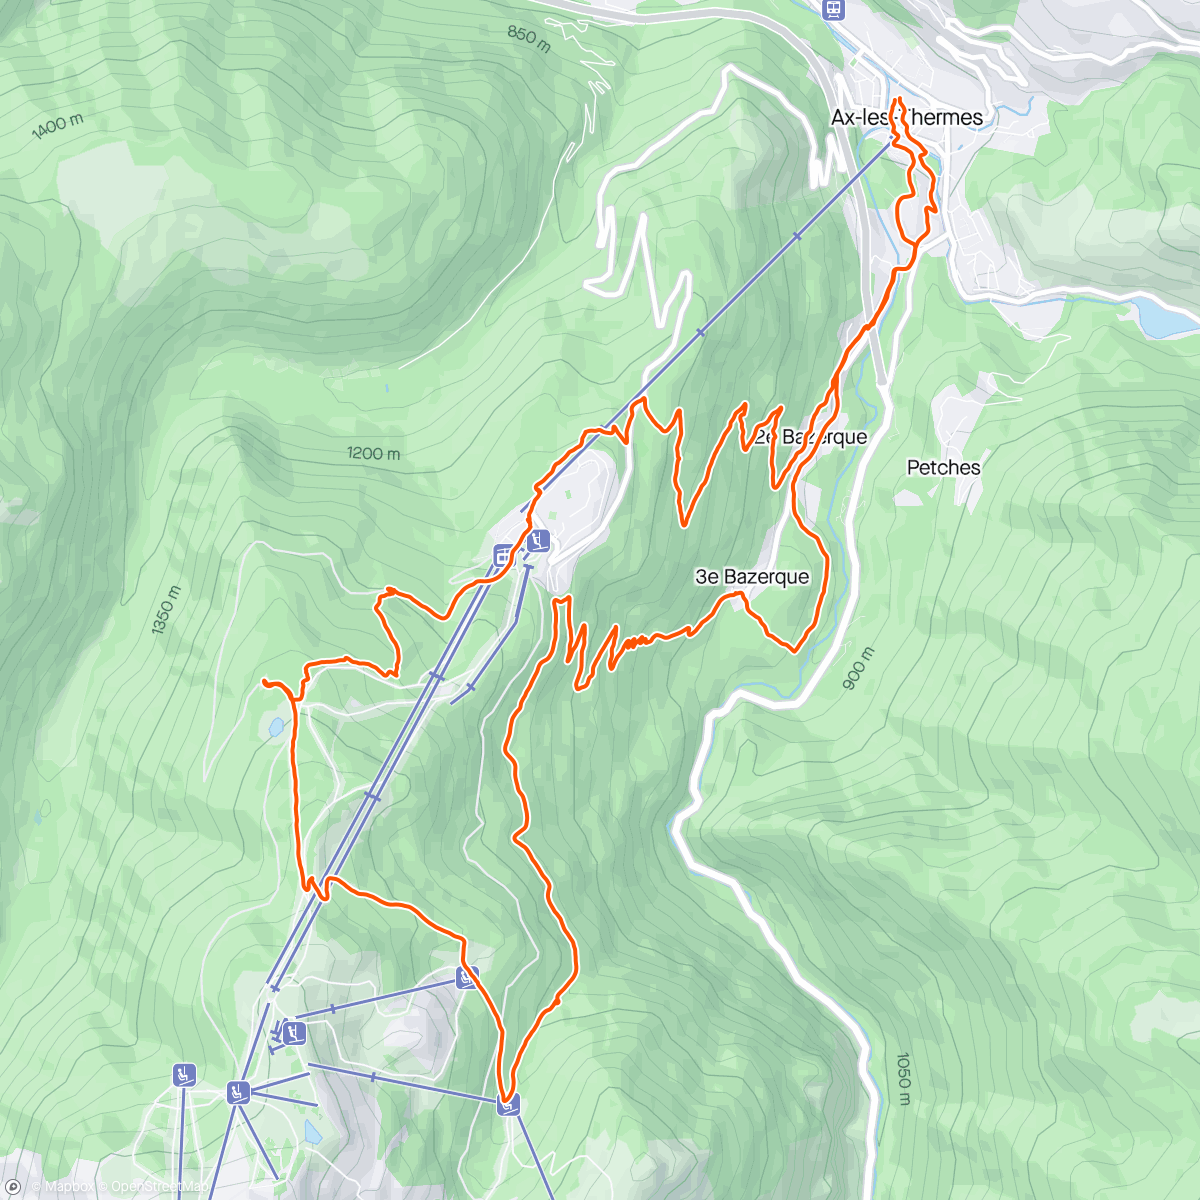 アクティビティ「Trail le matin reco du 25 de UltrAriège avec test de matériel avec intersport ax」の地図